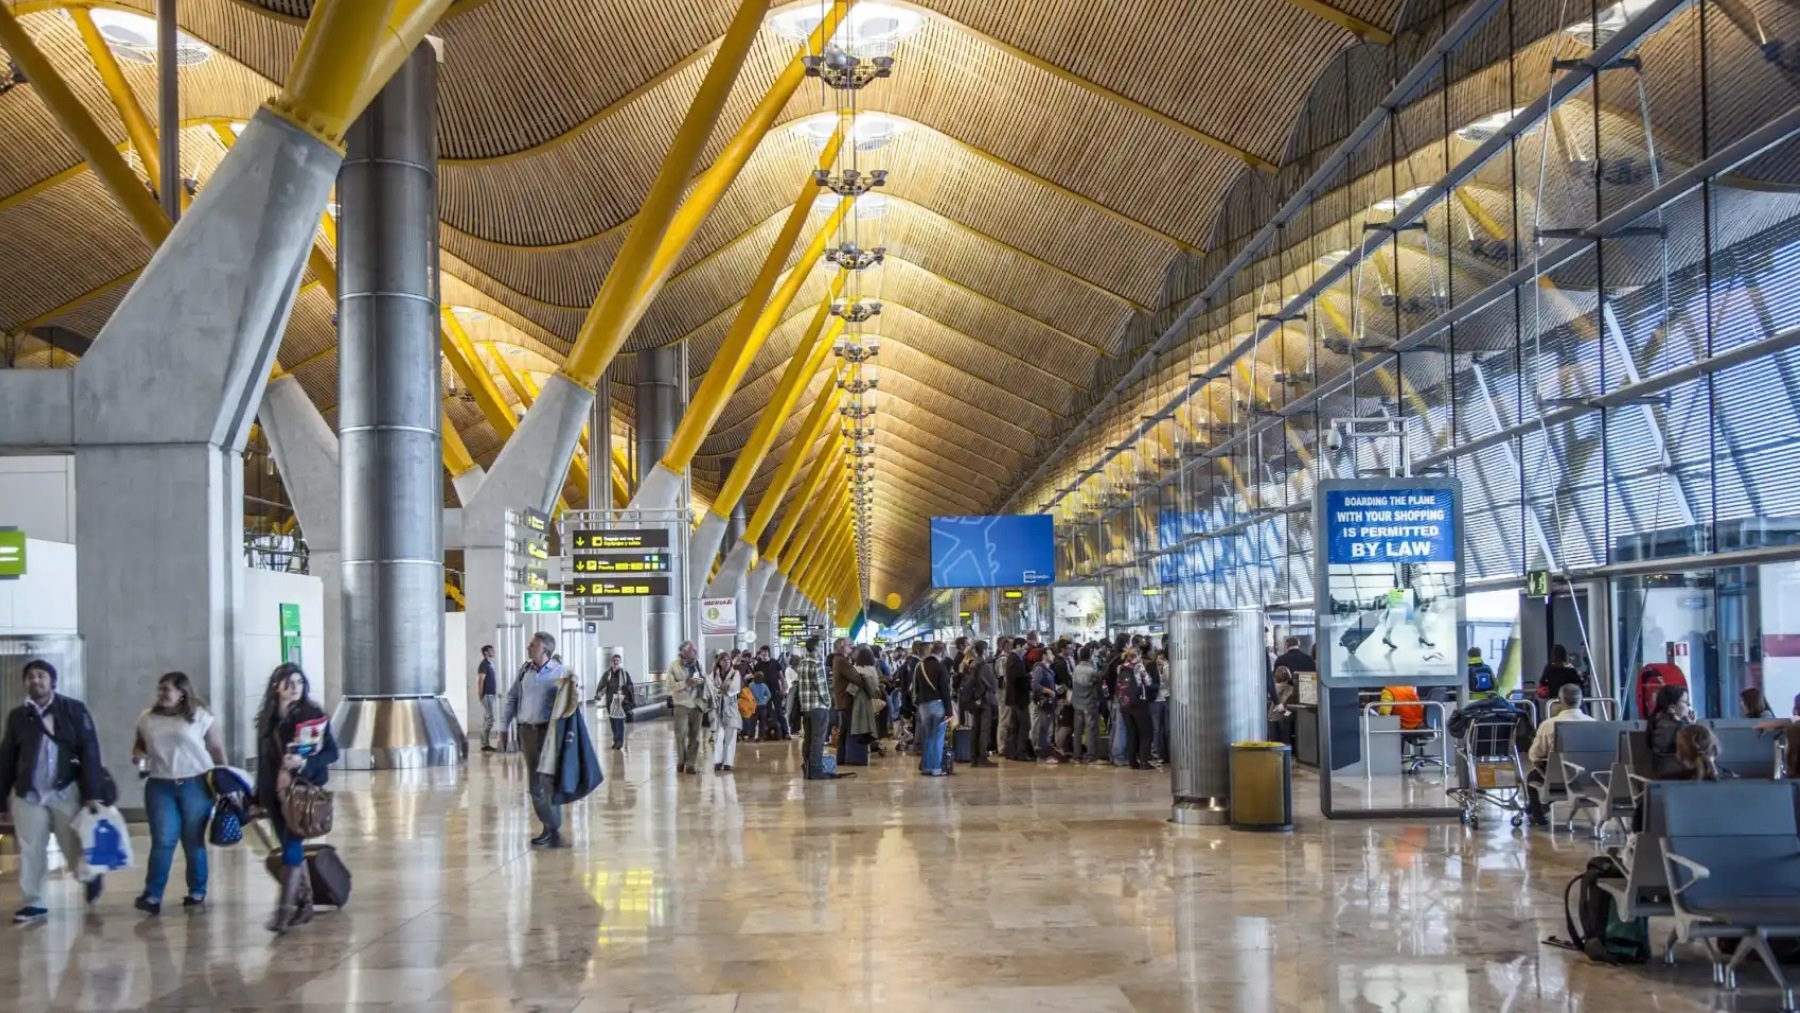 El aeropuerto de Barajas estrenará en breve una tienda que no te imaginas… y no es un Mercadona